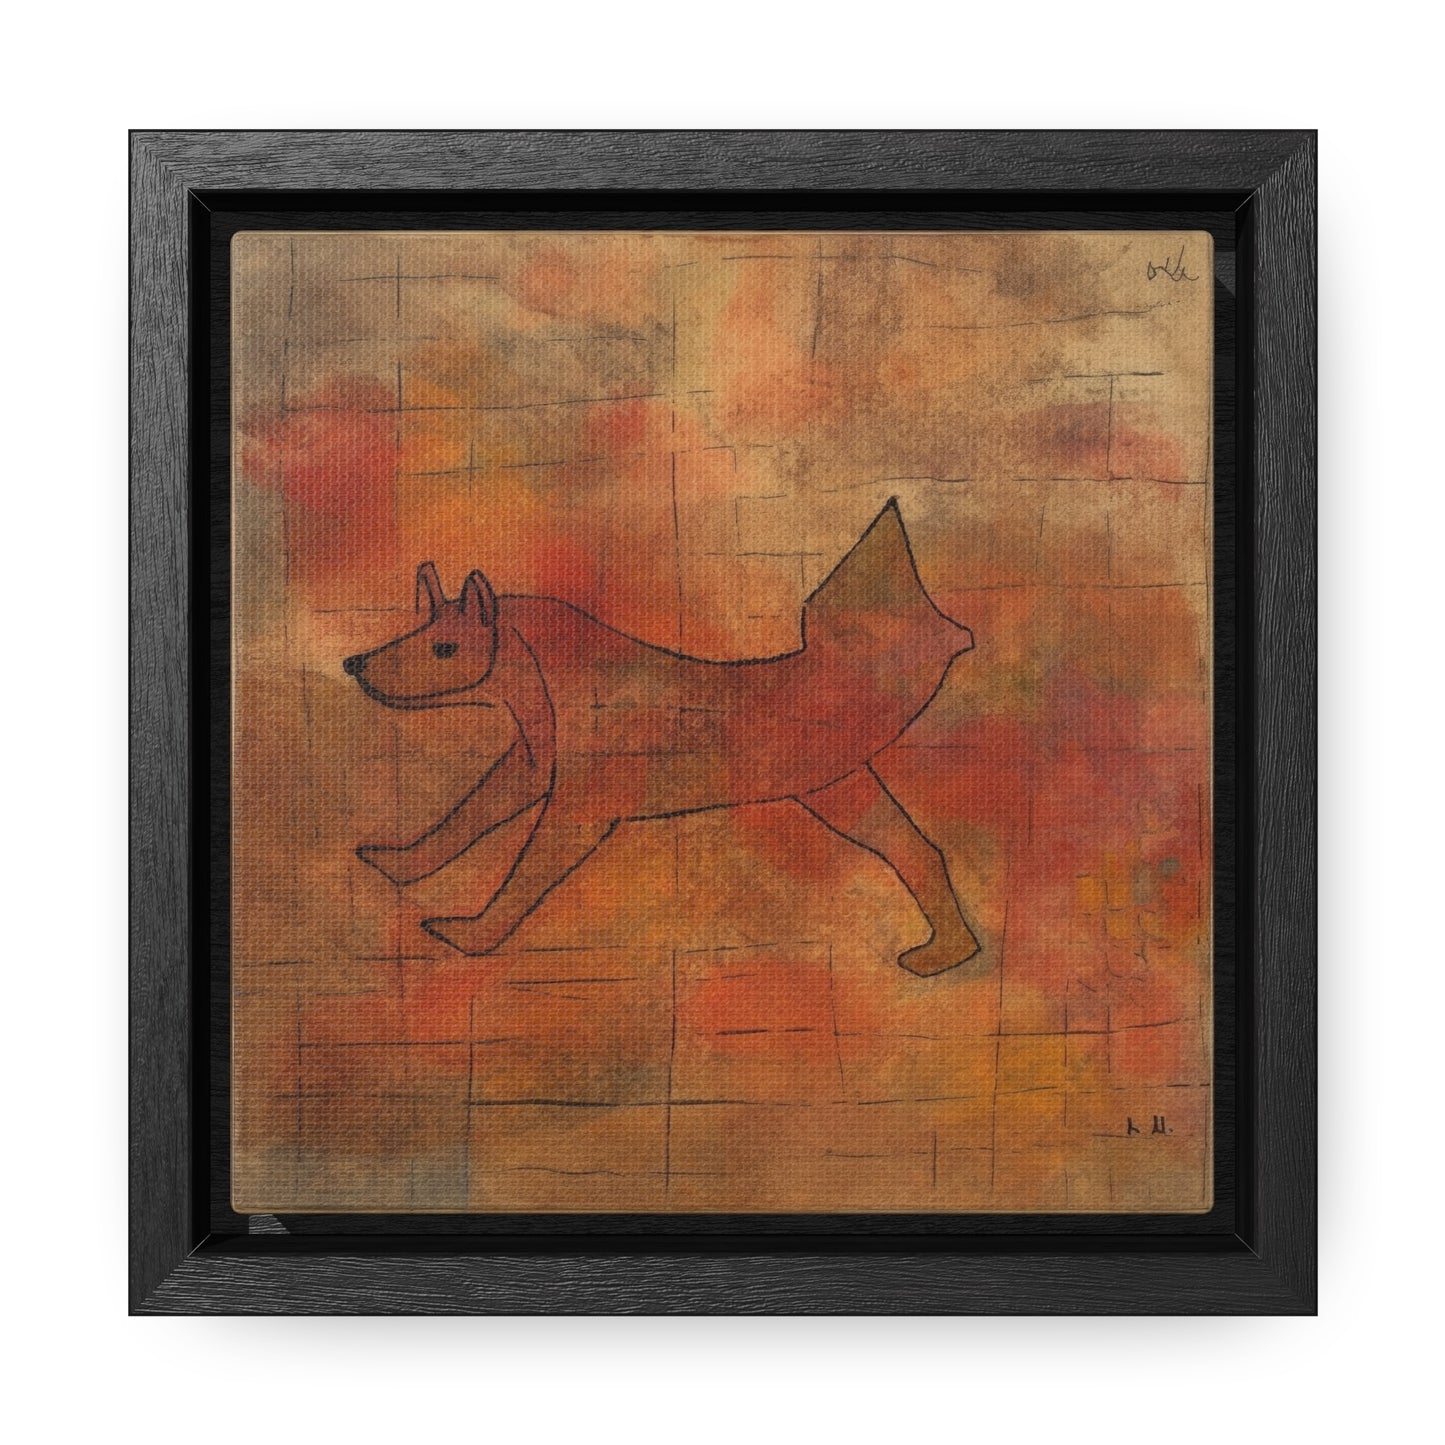 V Dog 2, Gallery Canvas Wraps, Square Frame